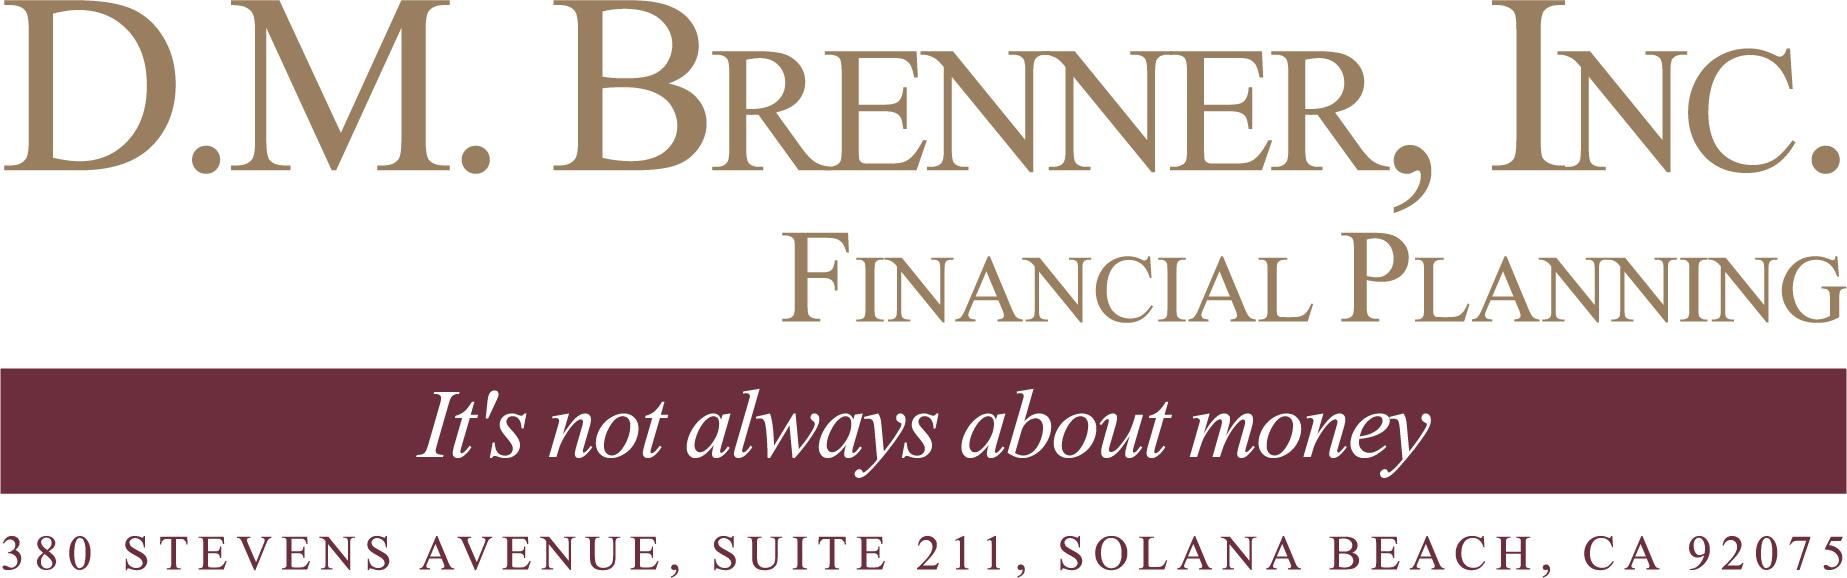 D. M. Brenner, Inc. logo